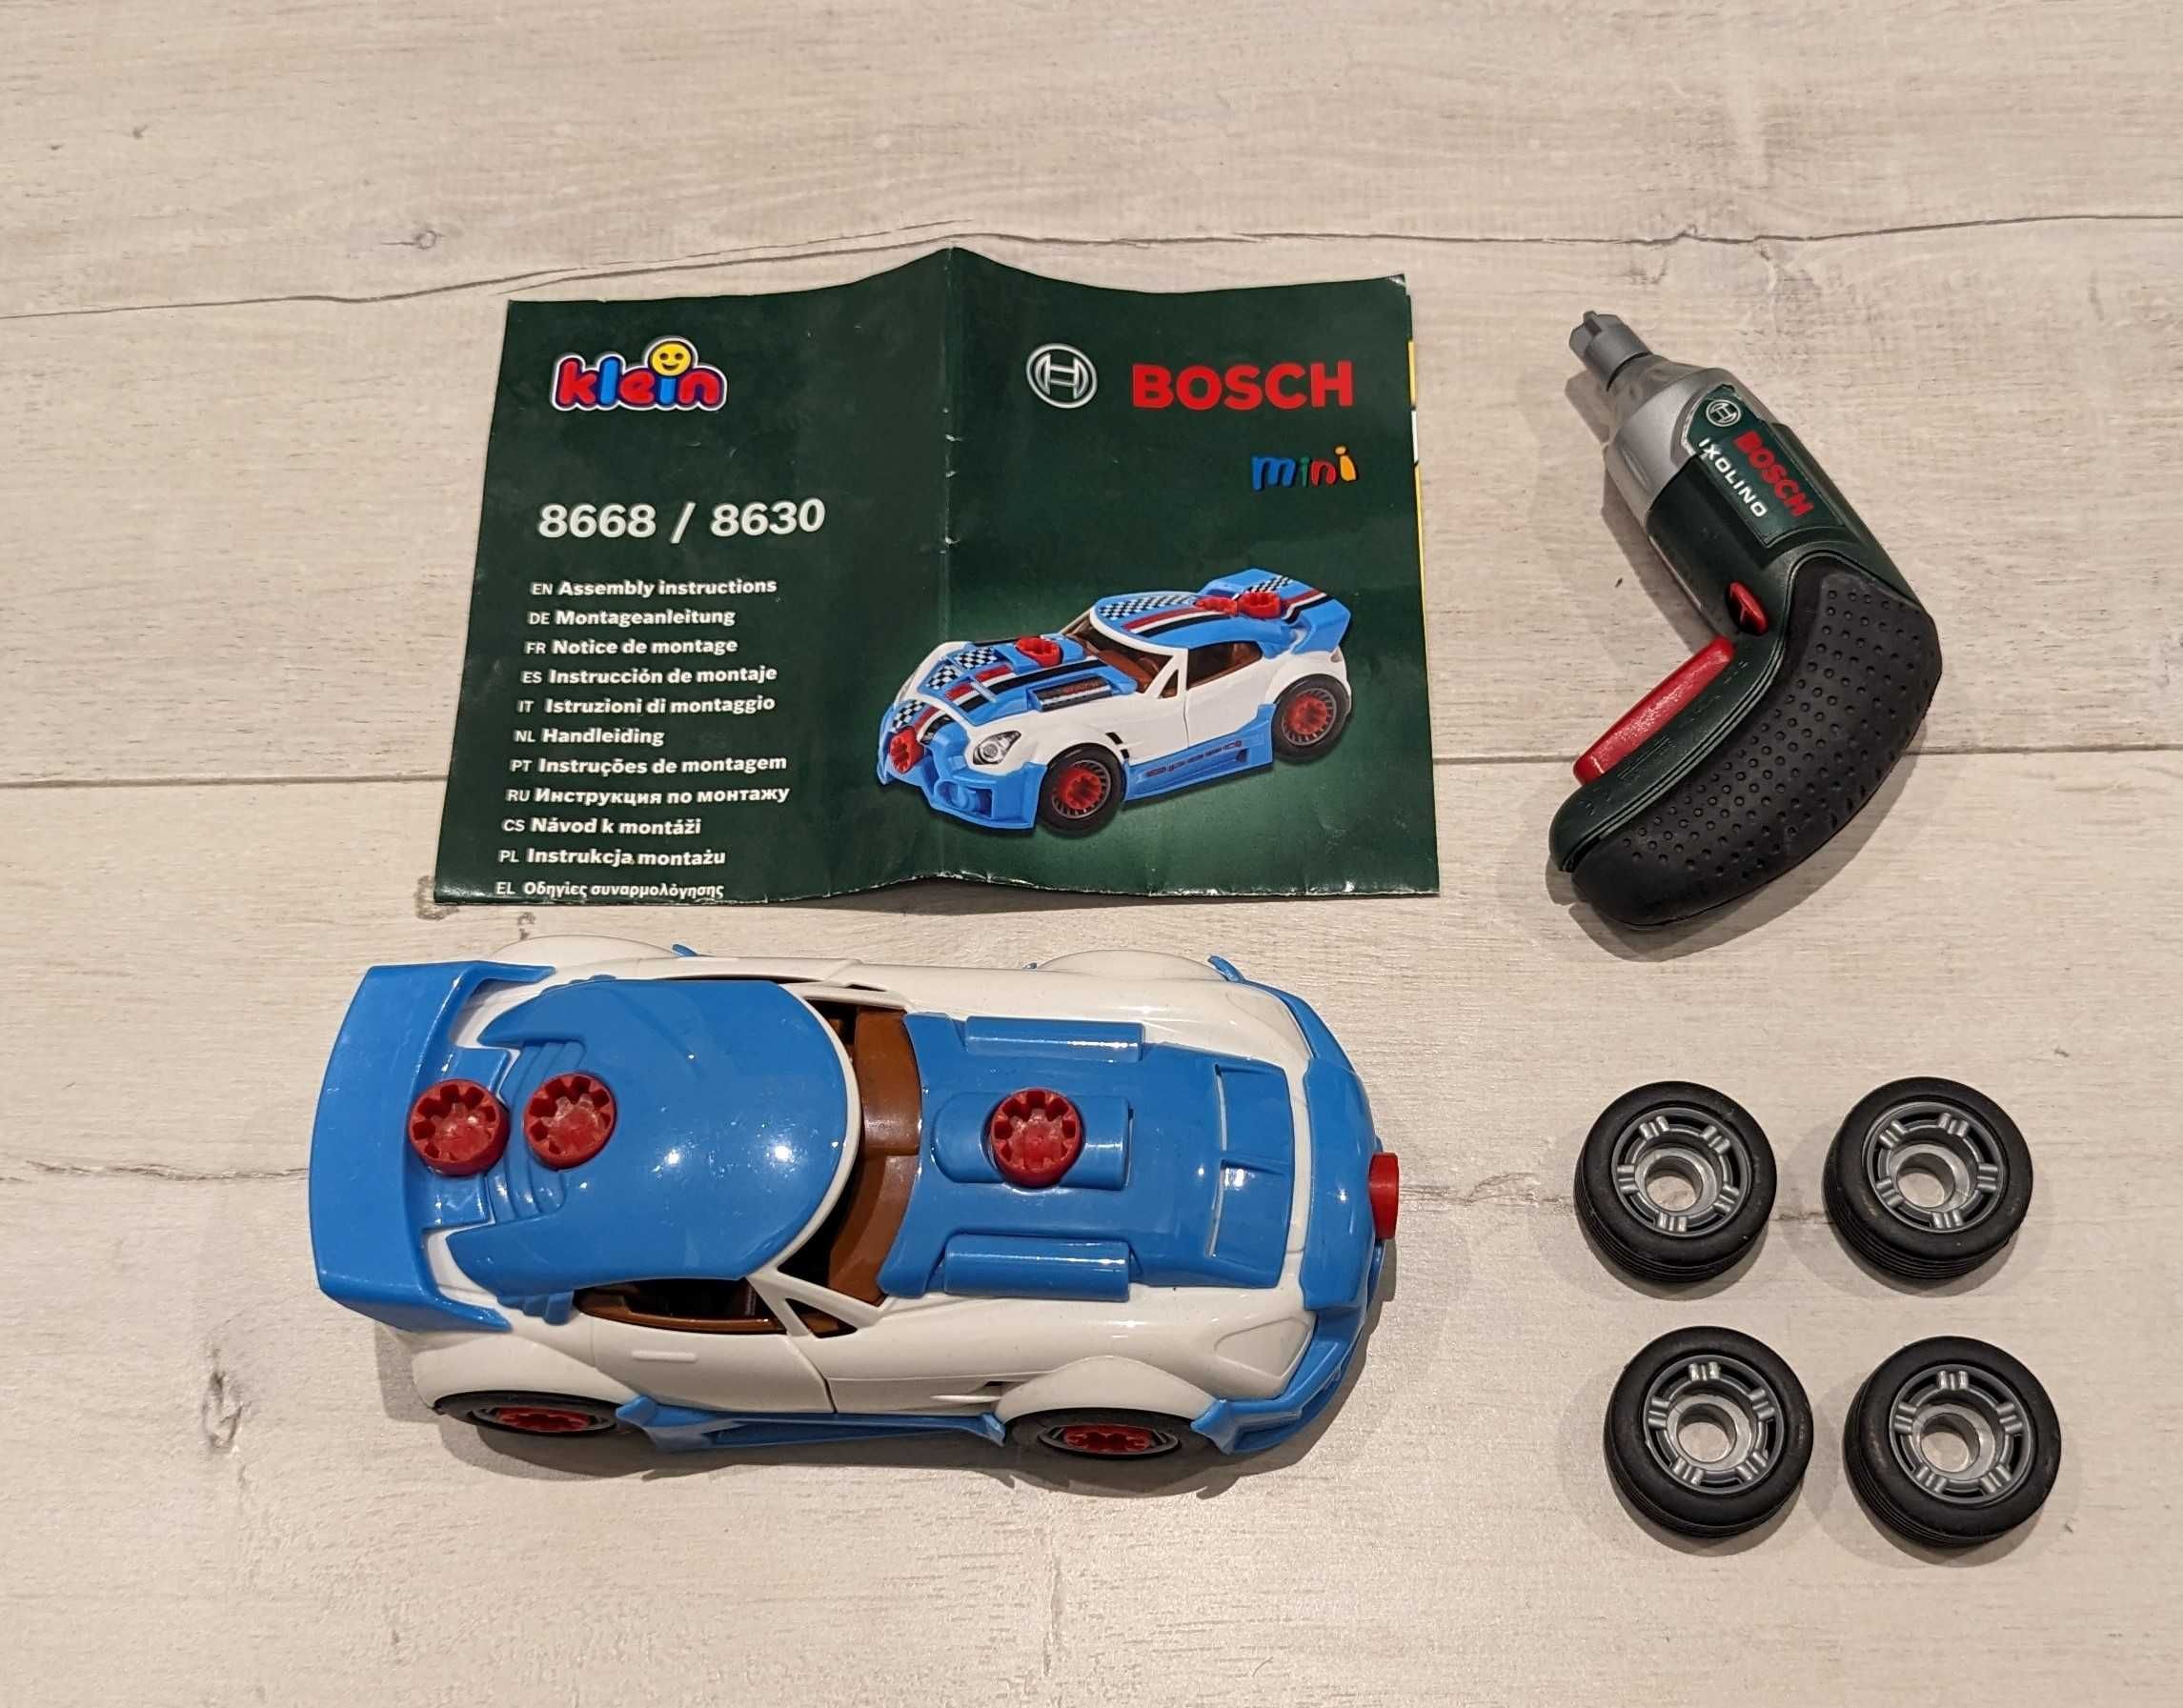 Stolik narzędziowy BOSCH Klein 8591 + zestaw auto tuning BOSCH 8668